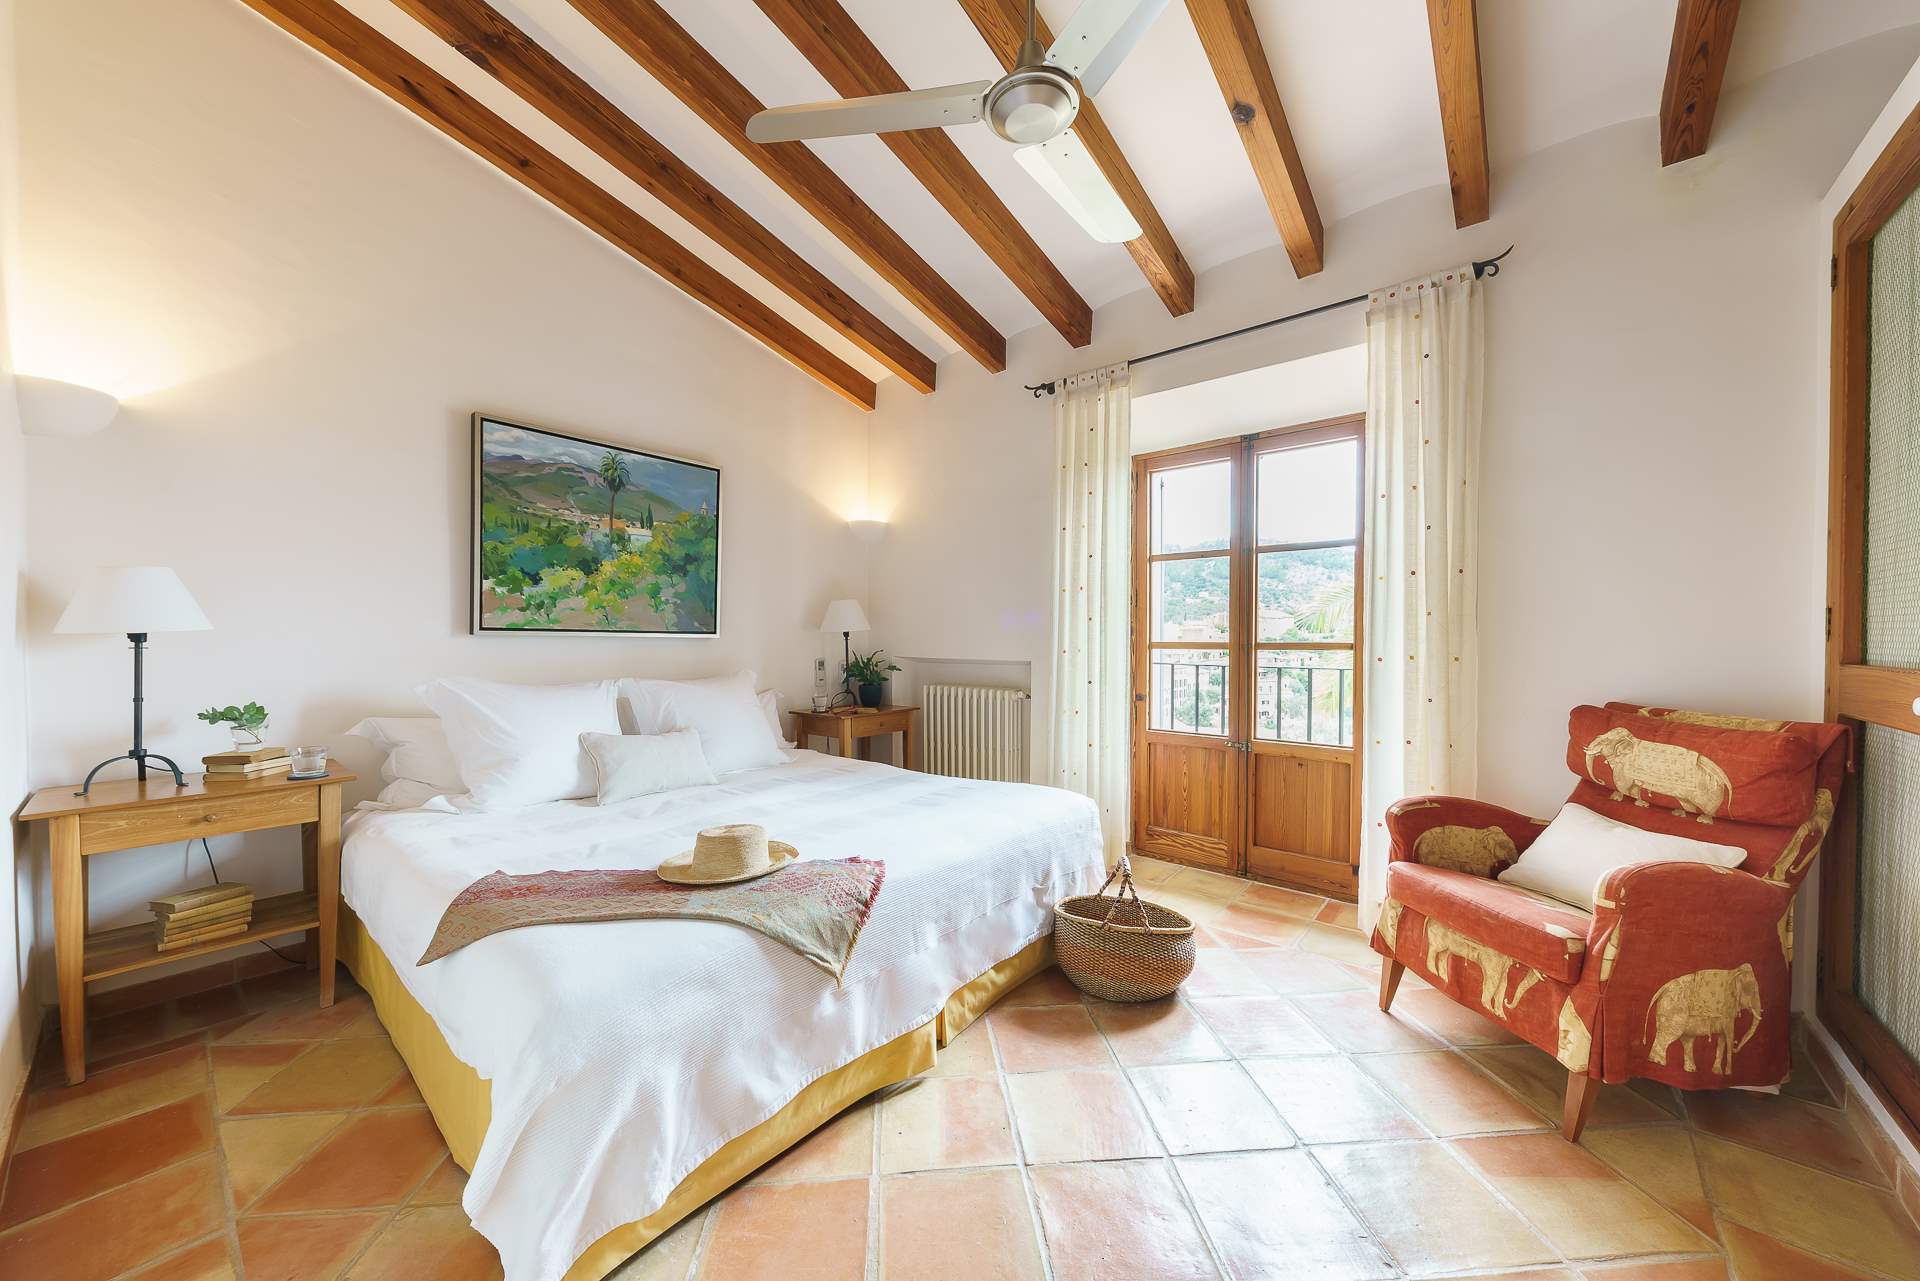 Sa Tanca, 4 Bedroom Rental, 4 bedroom villa in Soller & Deia, Majorca Photo #24